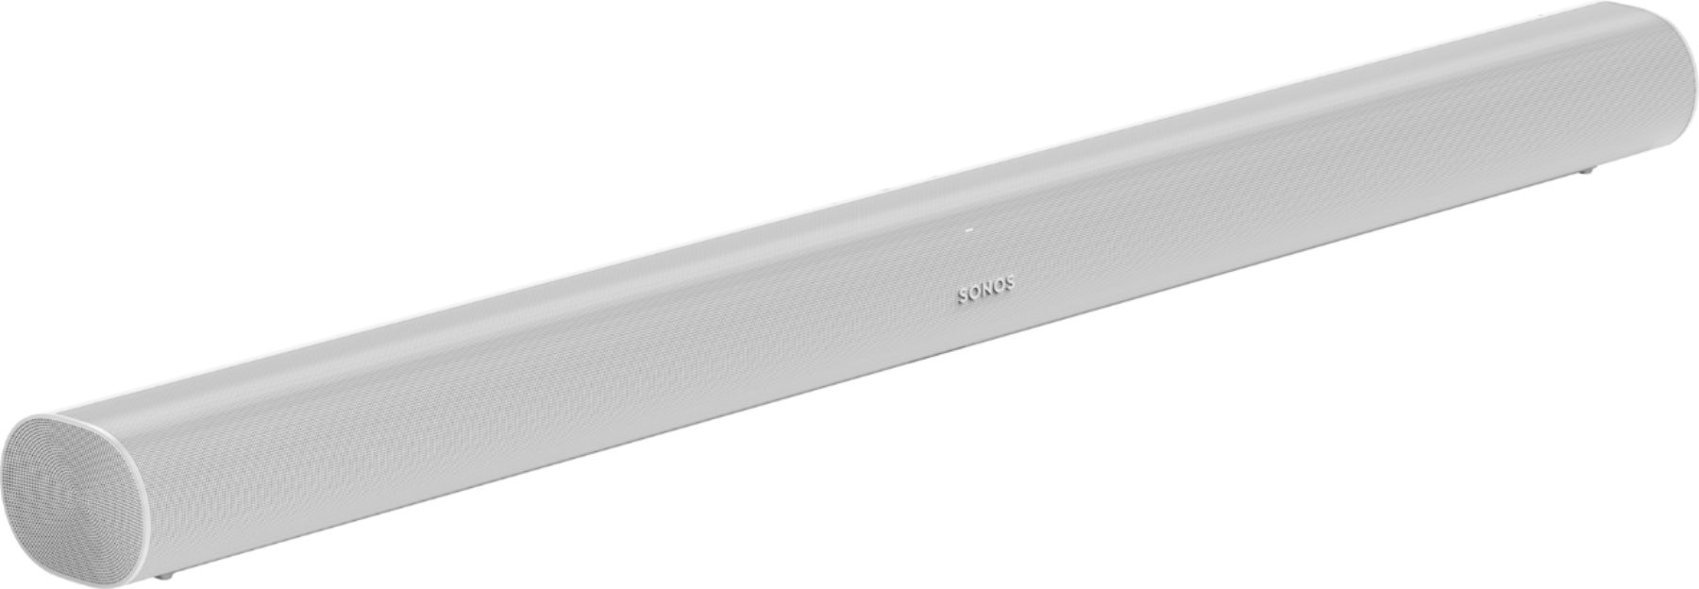 Sonos - Arc Soundbar with Dolby Atmos, Google Assistant and Amazon Alexa - White-White